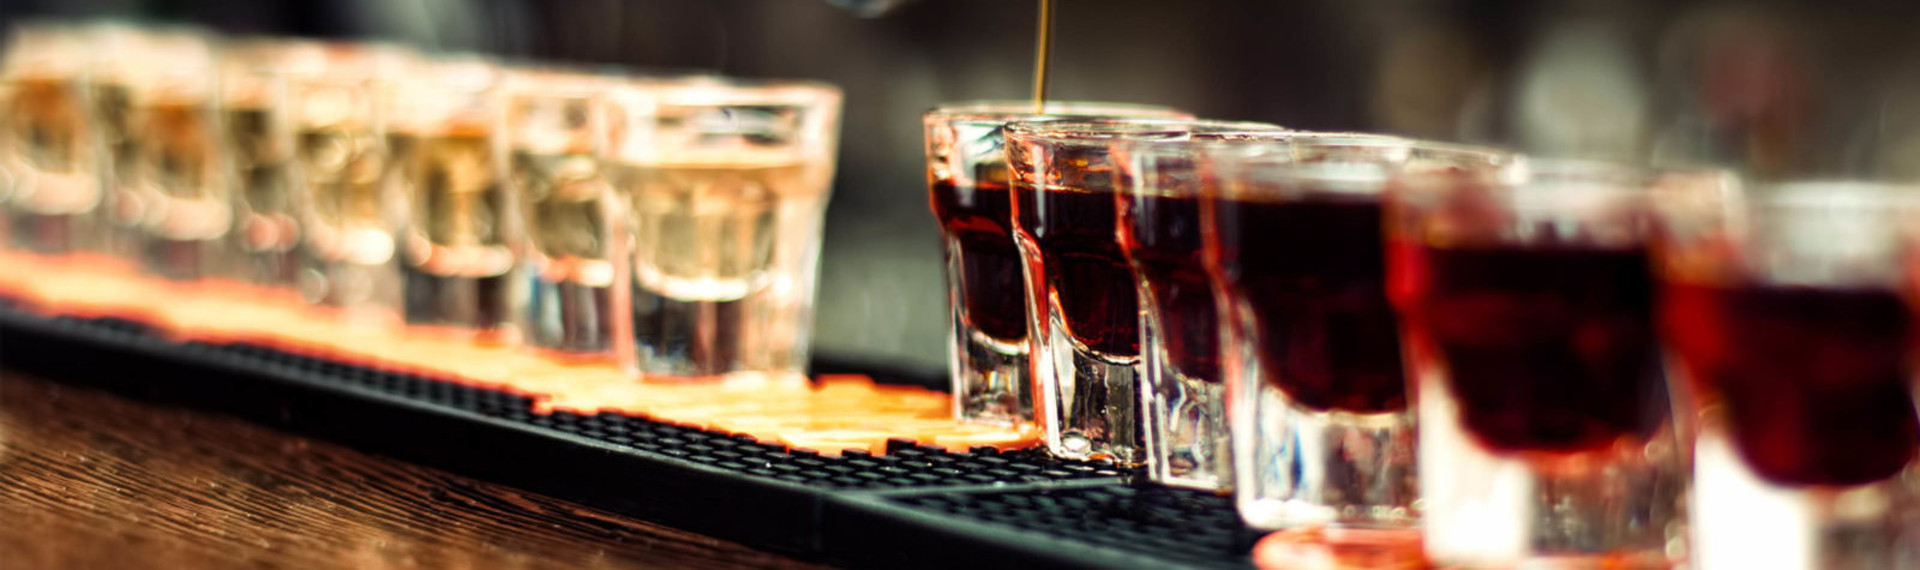 Tournée des Bars avec 5 shots de Vodka à Cracovie | EVG.fr